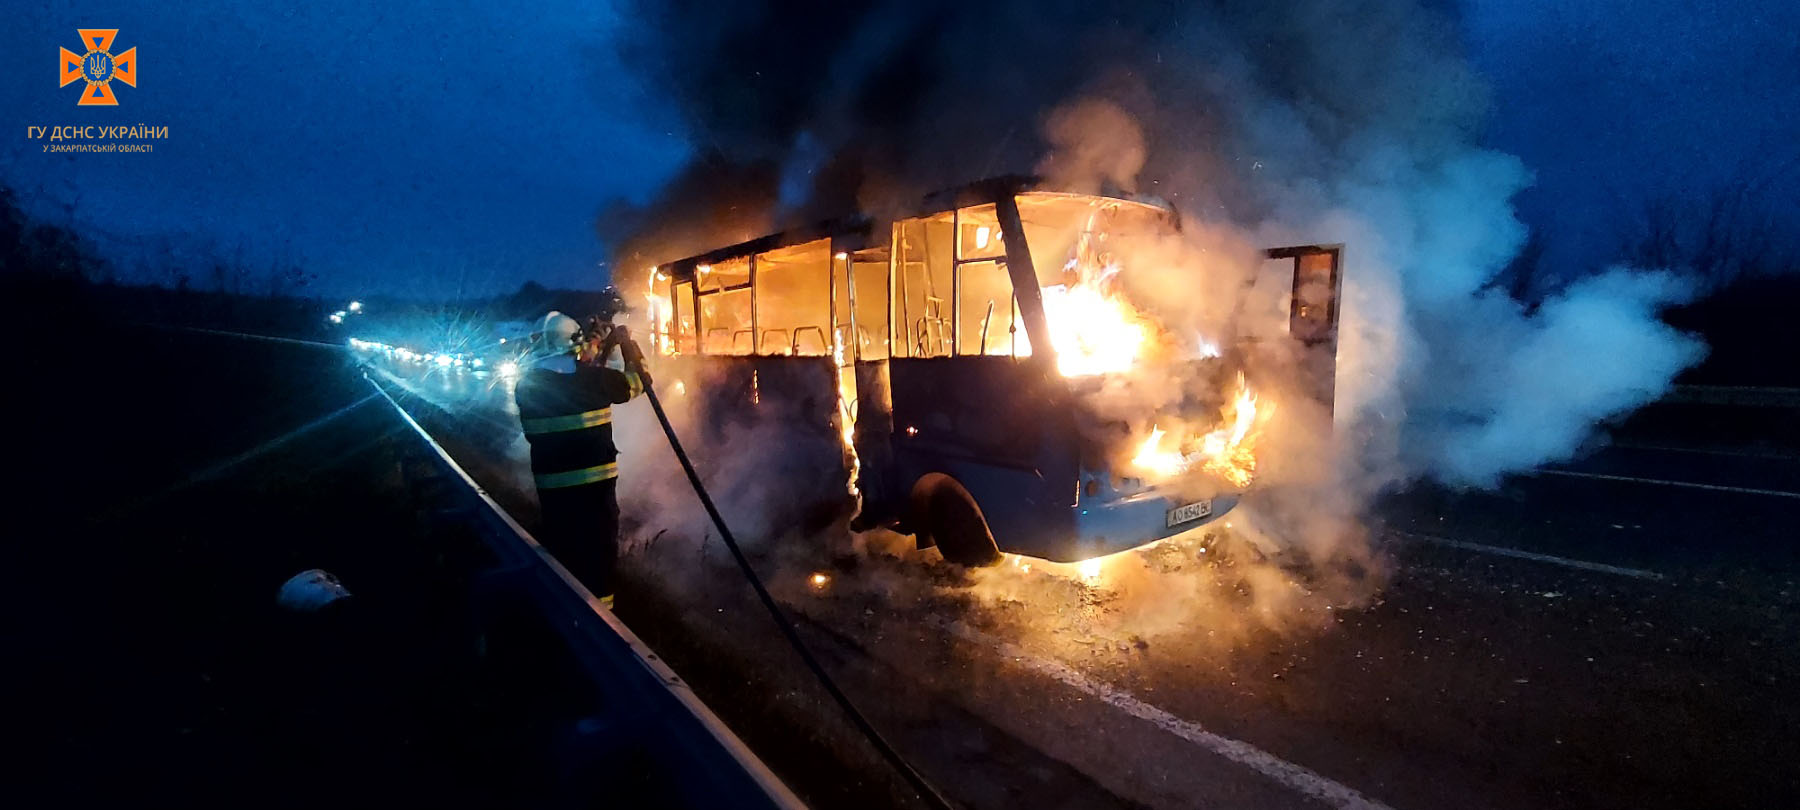 Постраждалих немає: рятувальники розповіли про пожежу в автобусі